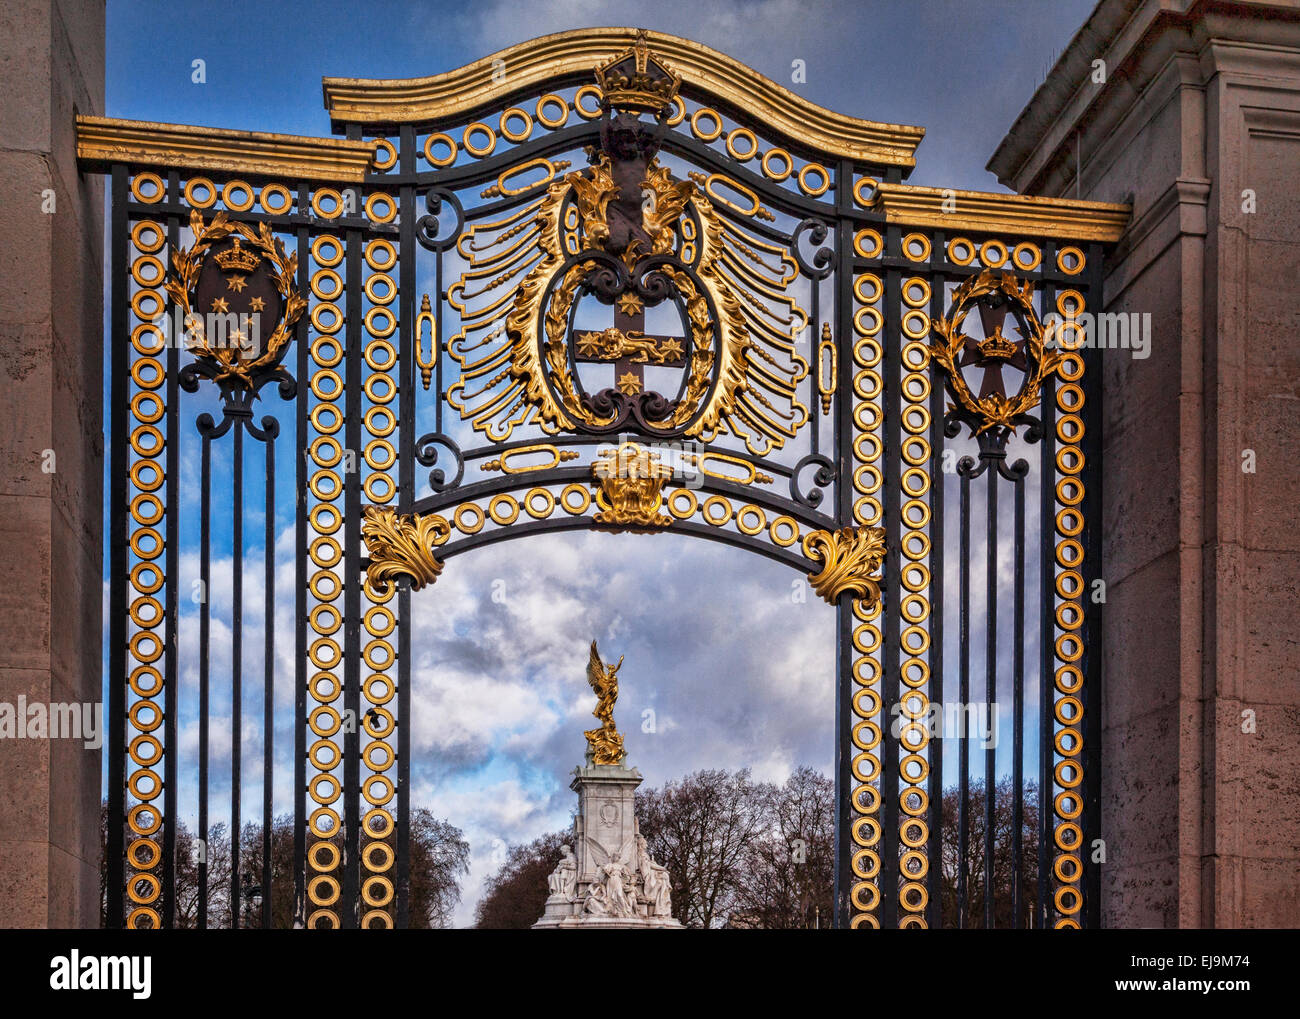 Magnifique au palais de Buckingham Gate, London, en vue jusqu'à l'Édifice commémoratif Victoria. Banque D'Images